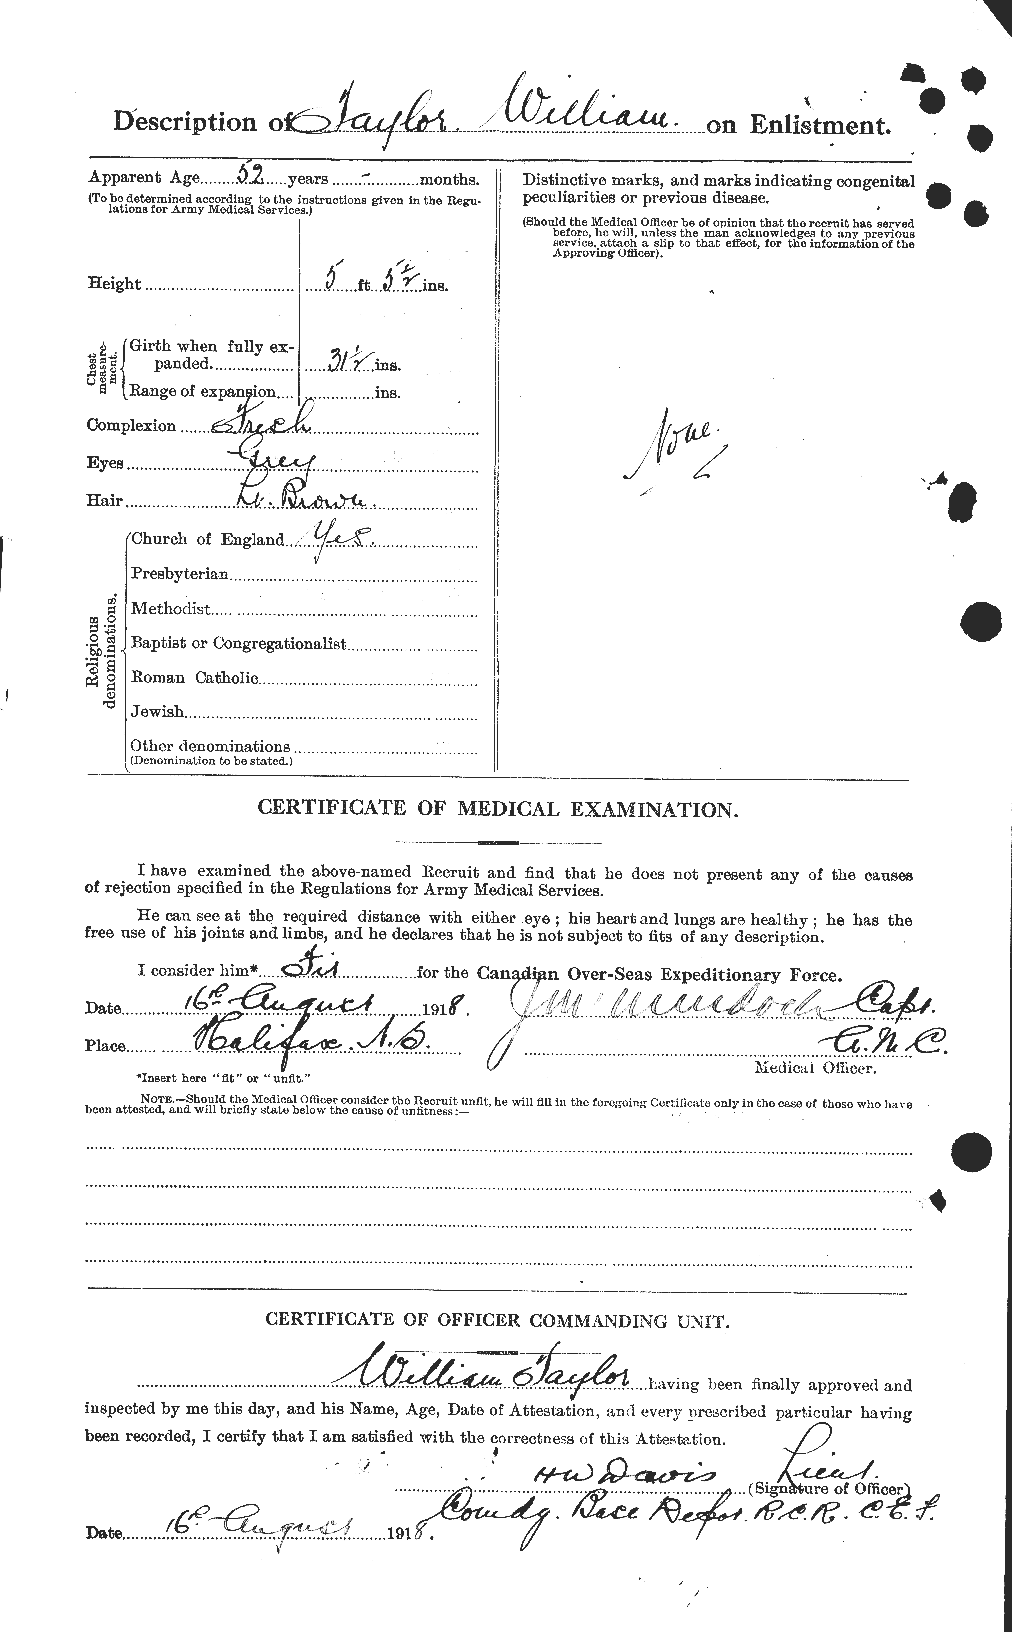 Dossiers du Personnel de la Première Guerre mondiale - CEC 628125b